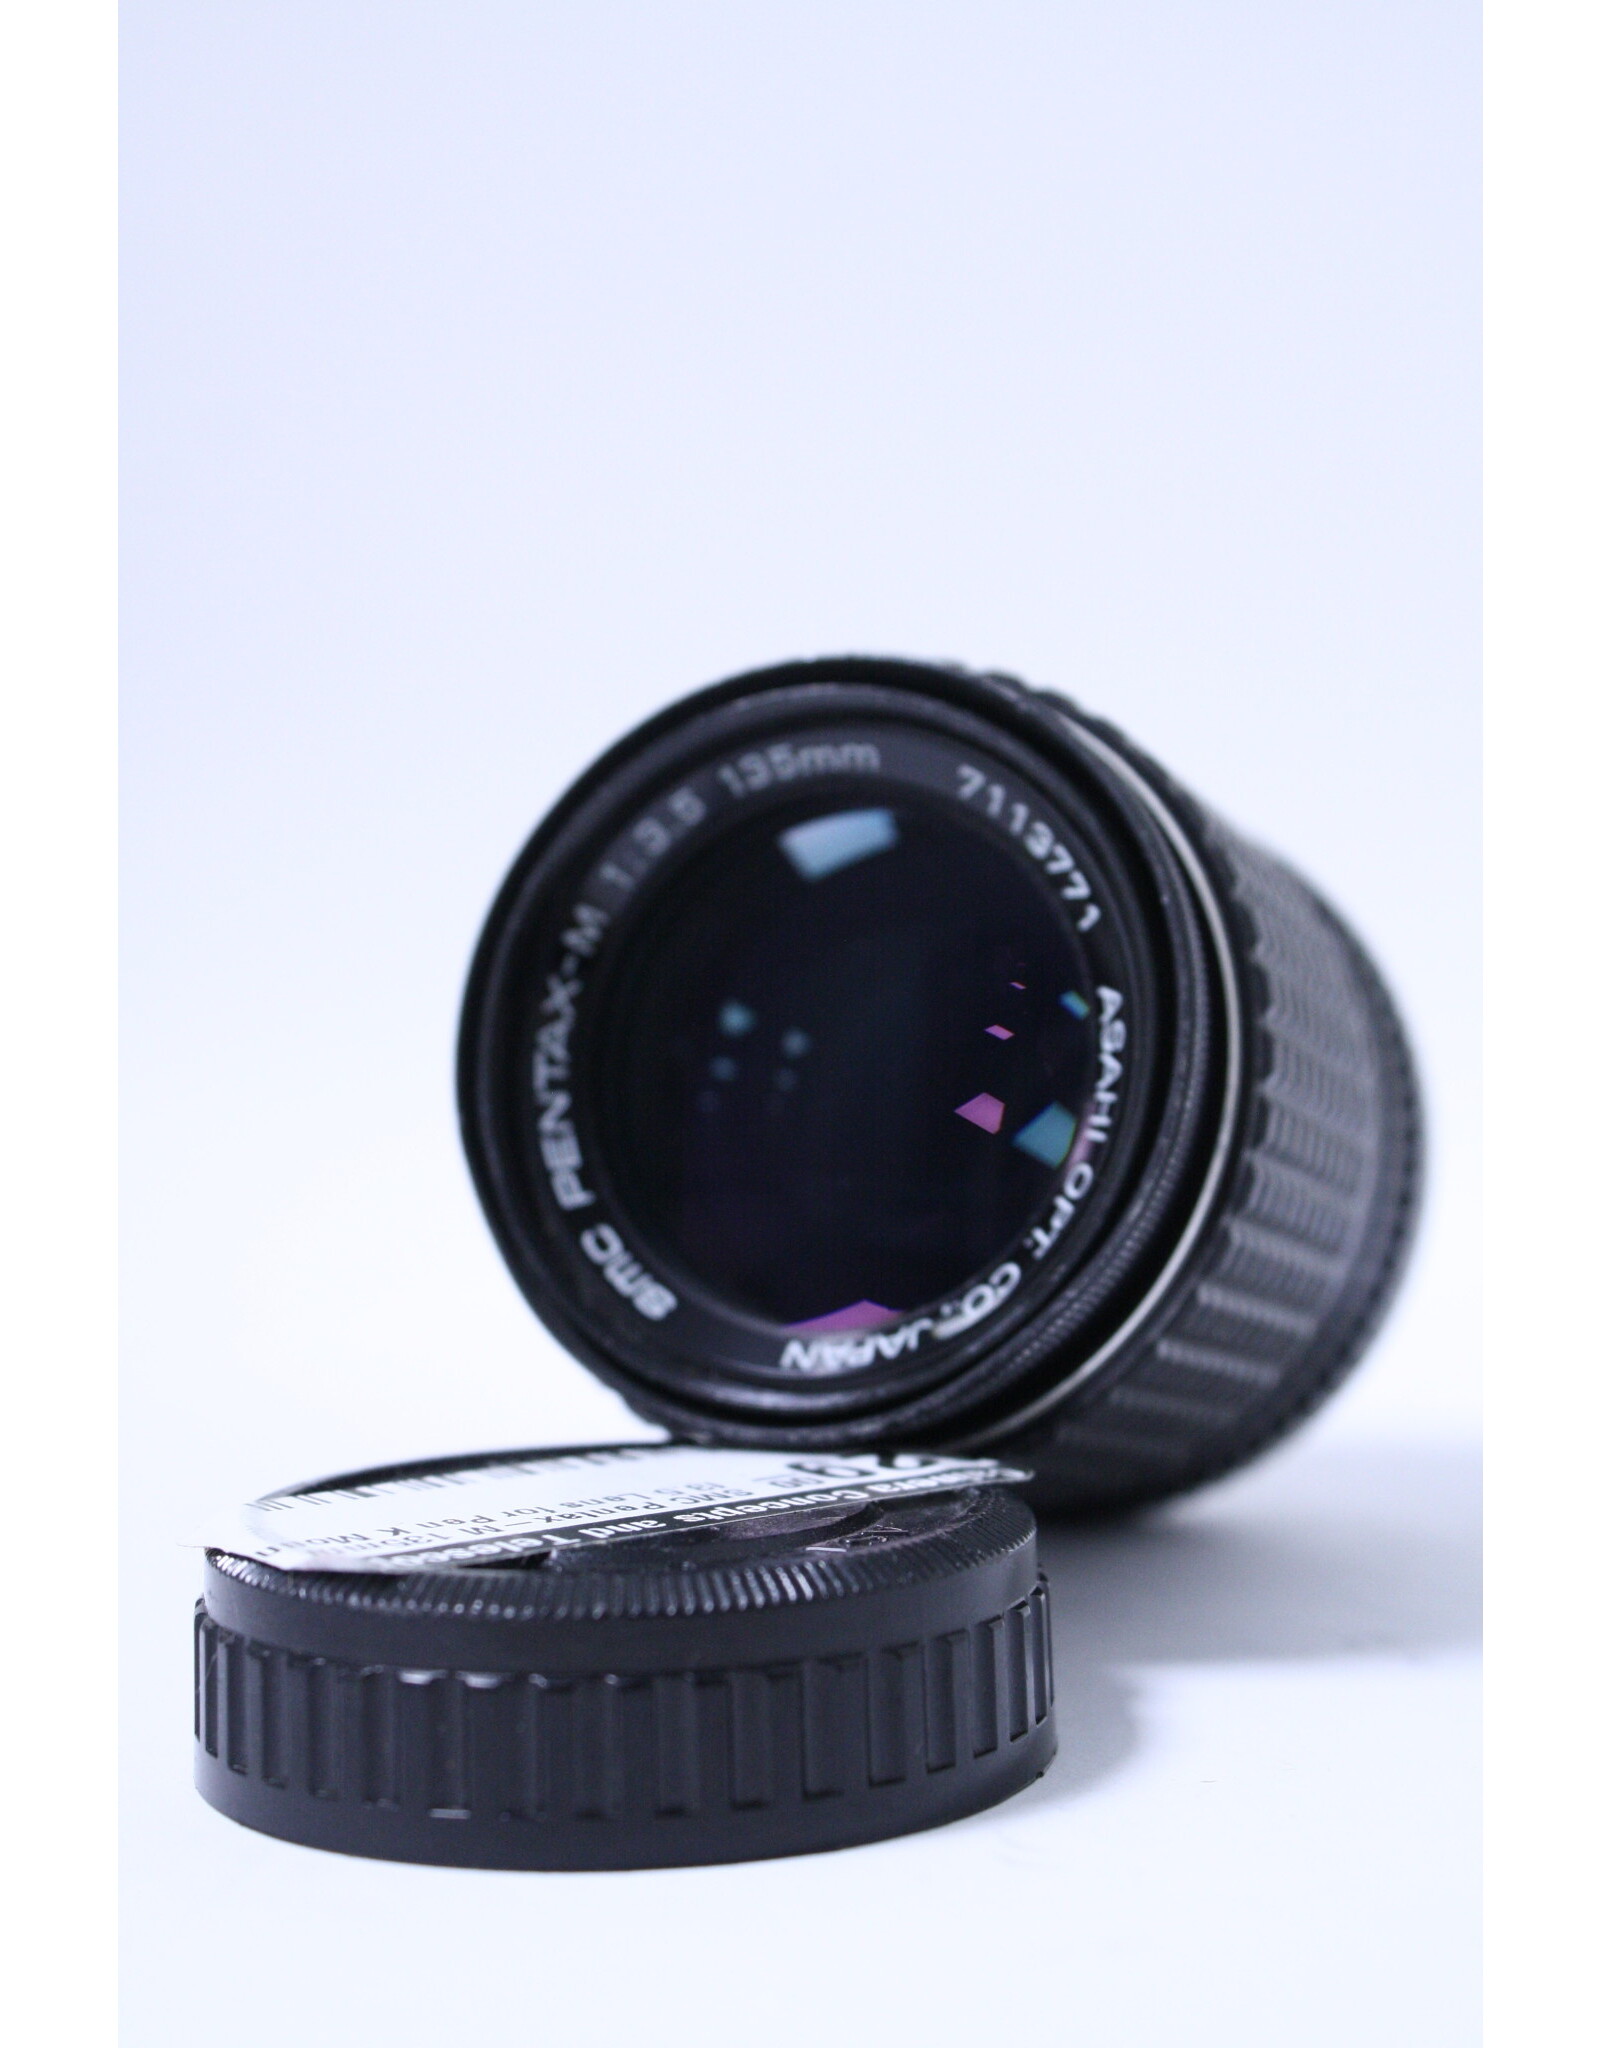 SMC Pentax-M 135mm f3.5 Lens for Pen K Mount